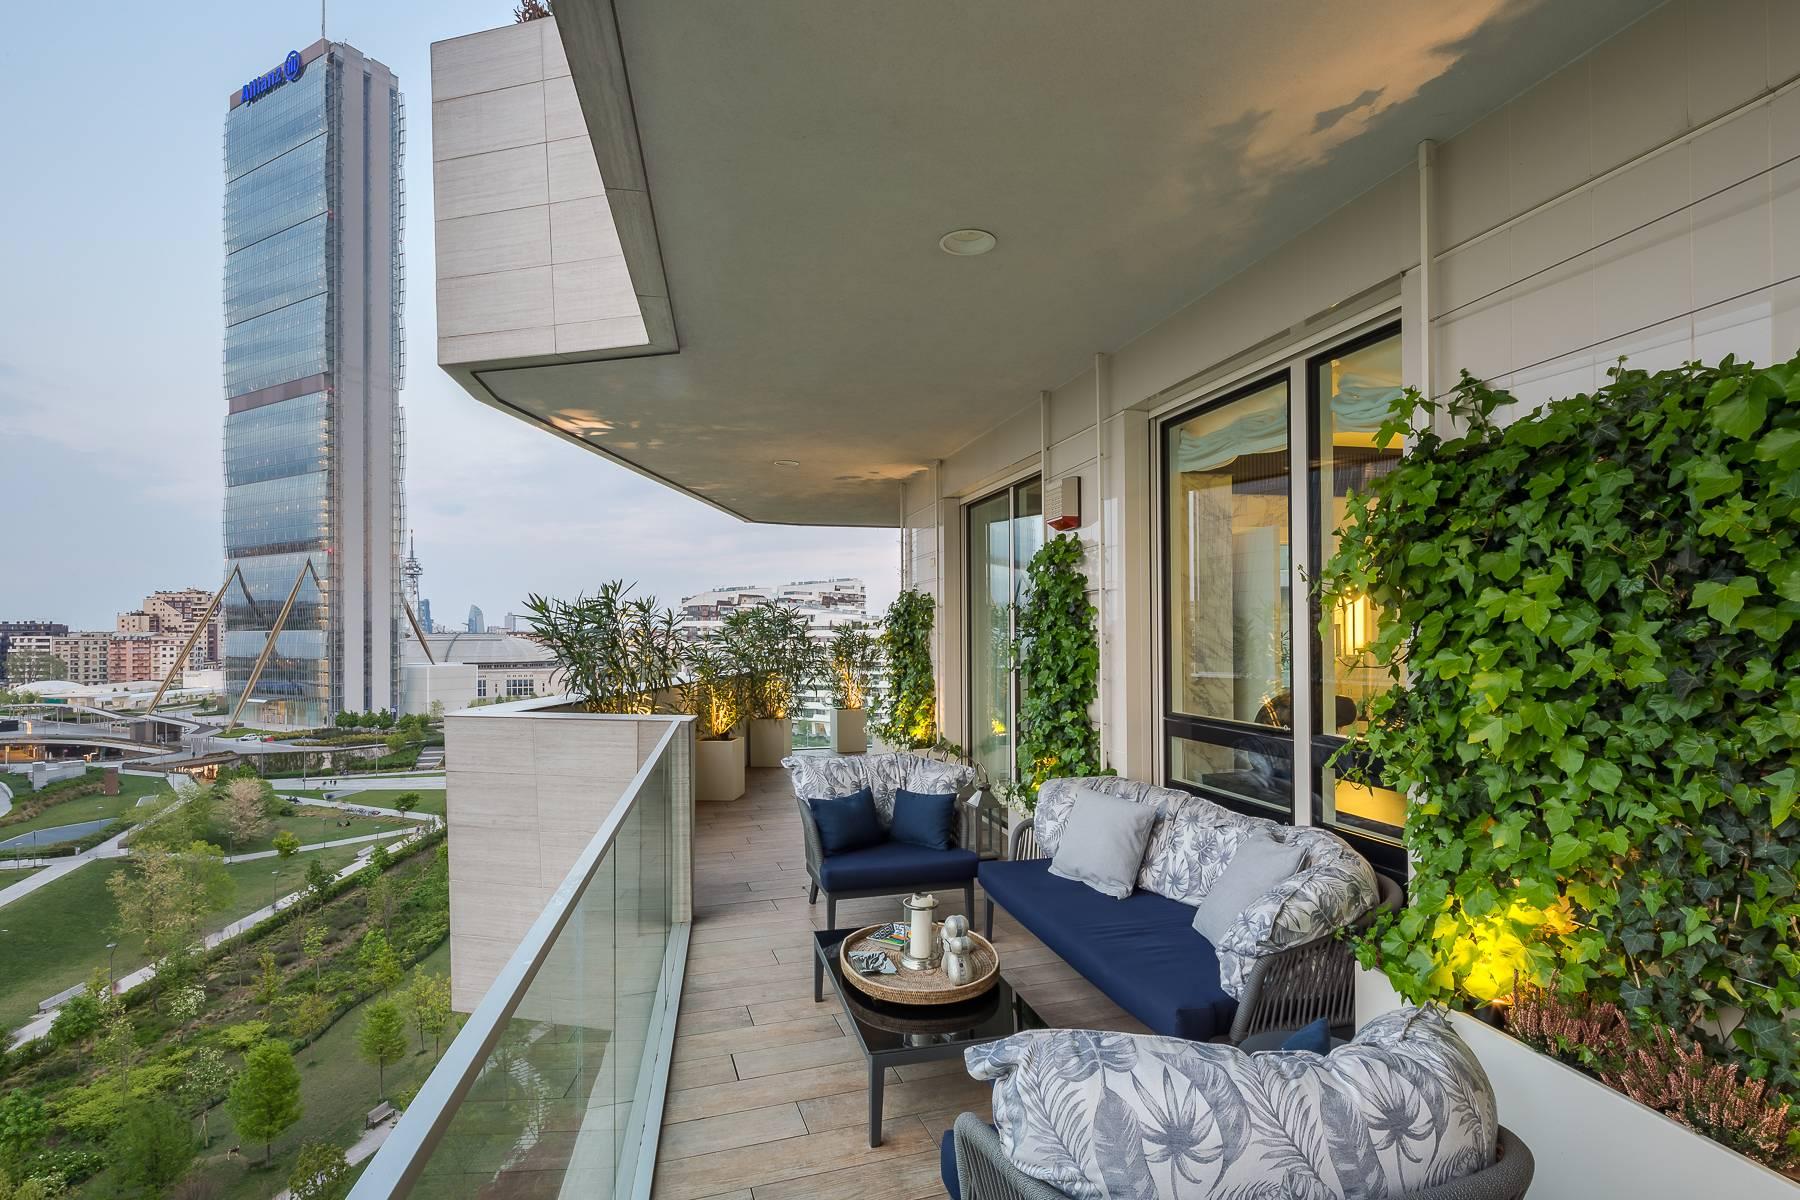 Wunderschöne möblierte Design-Wohnung mit Terrassen im CitylIfe Stadtviertel - 33